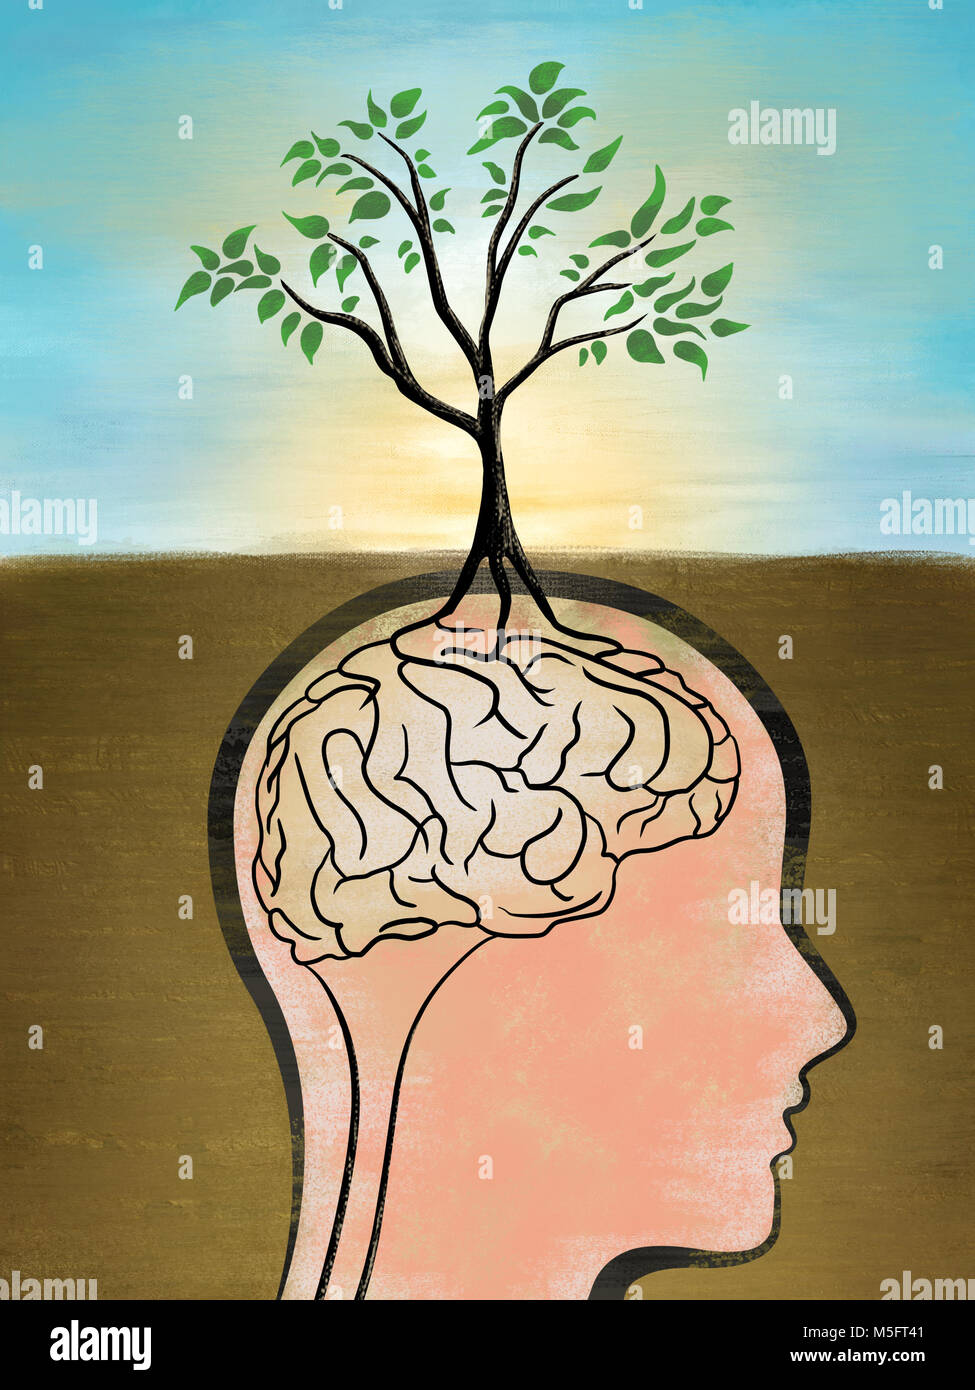 Les racines d'un arbre crée une forme de cerveau. Illustration numérique, les textures rugueuses visibles en taille réelle. Banque D'Images